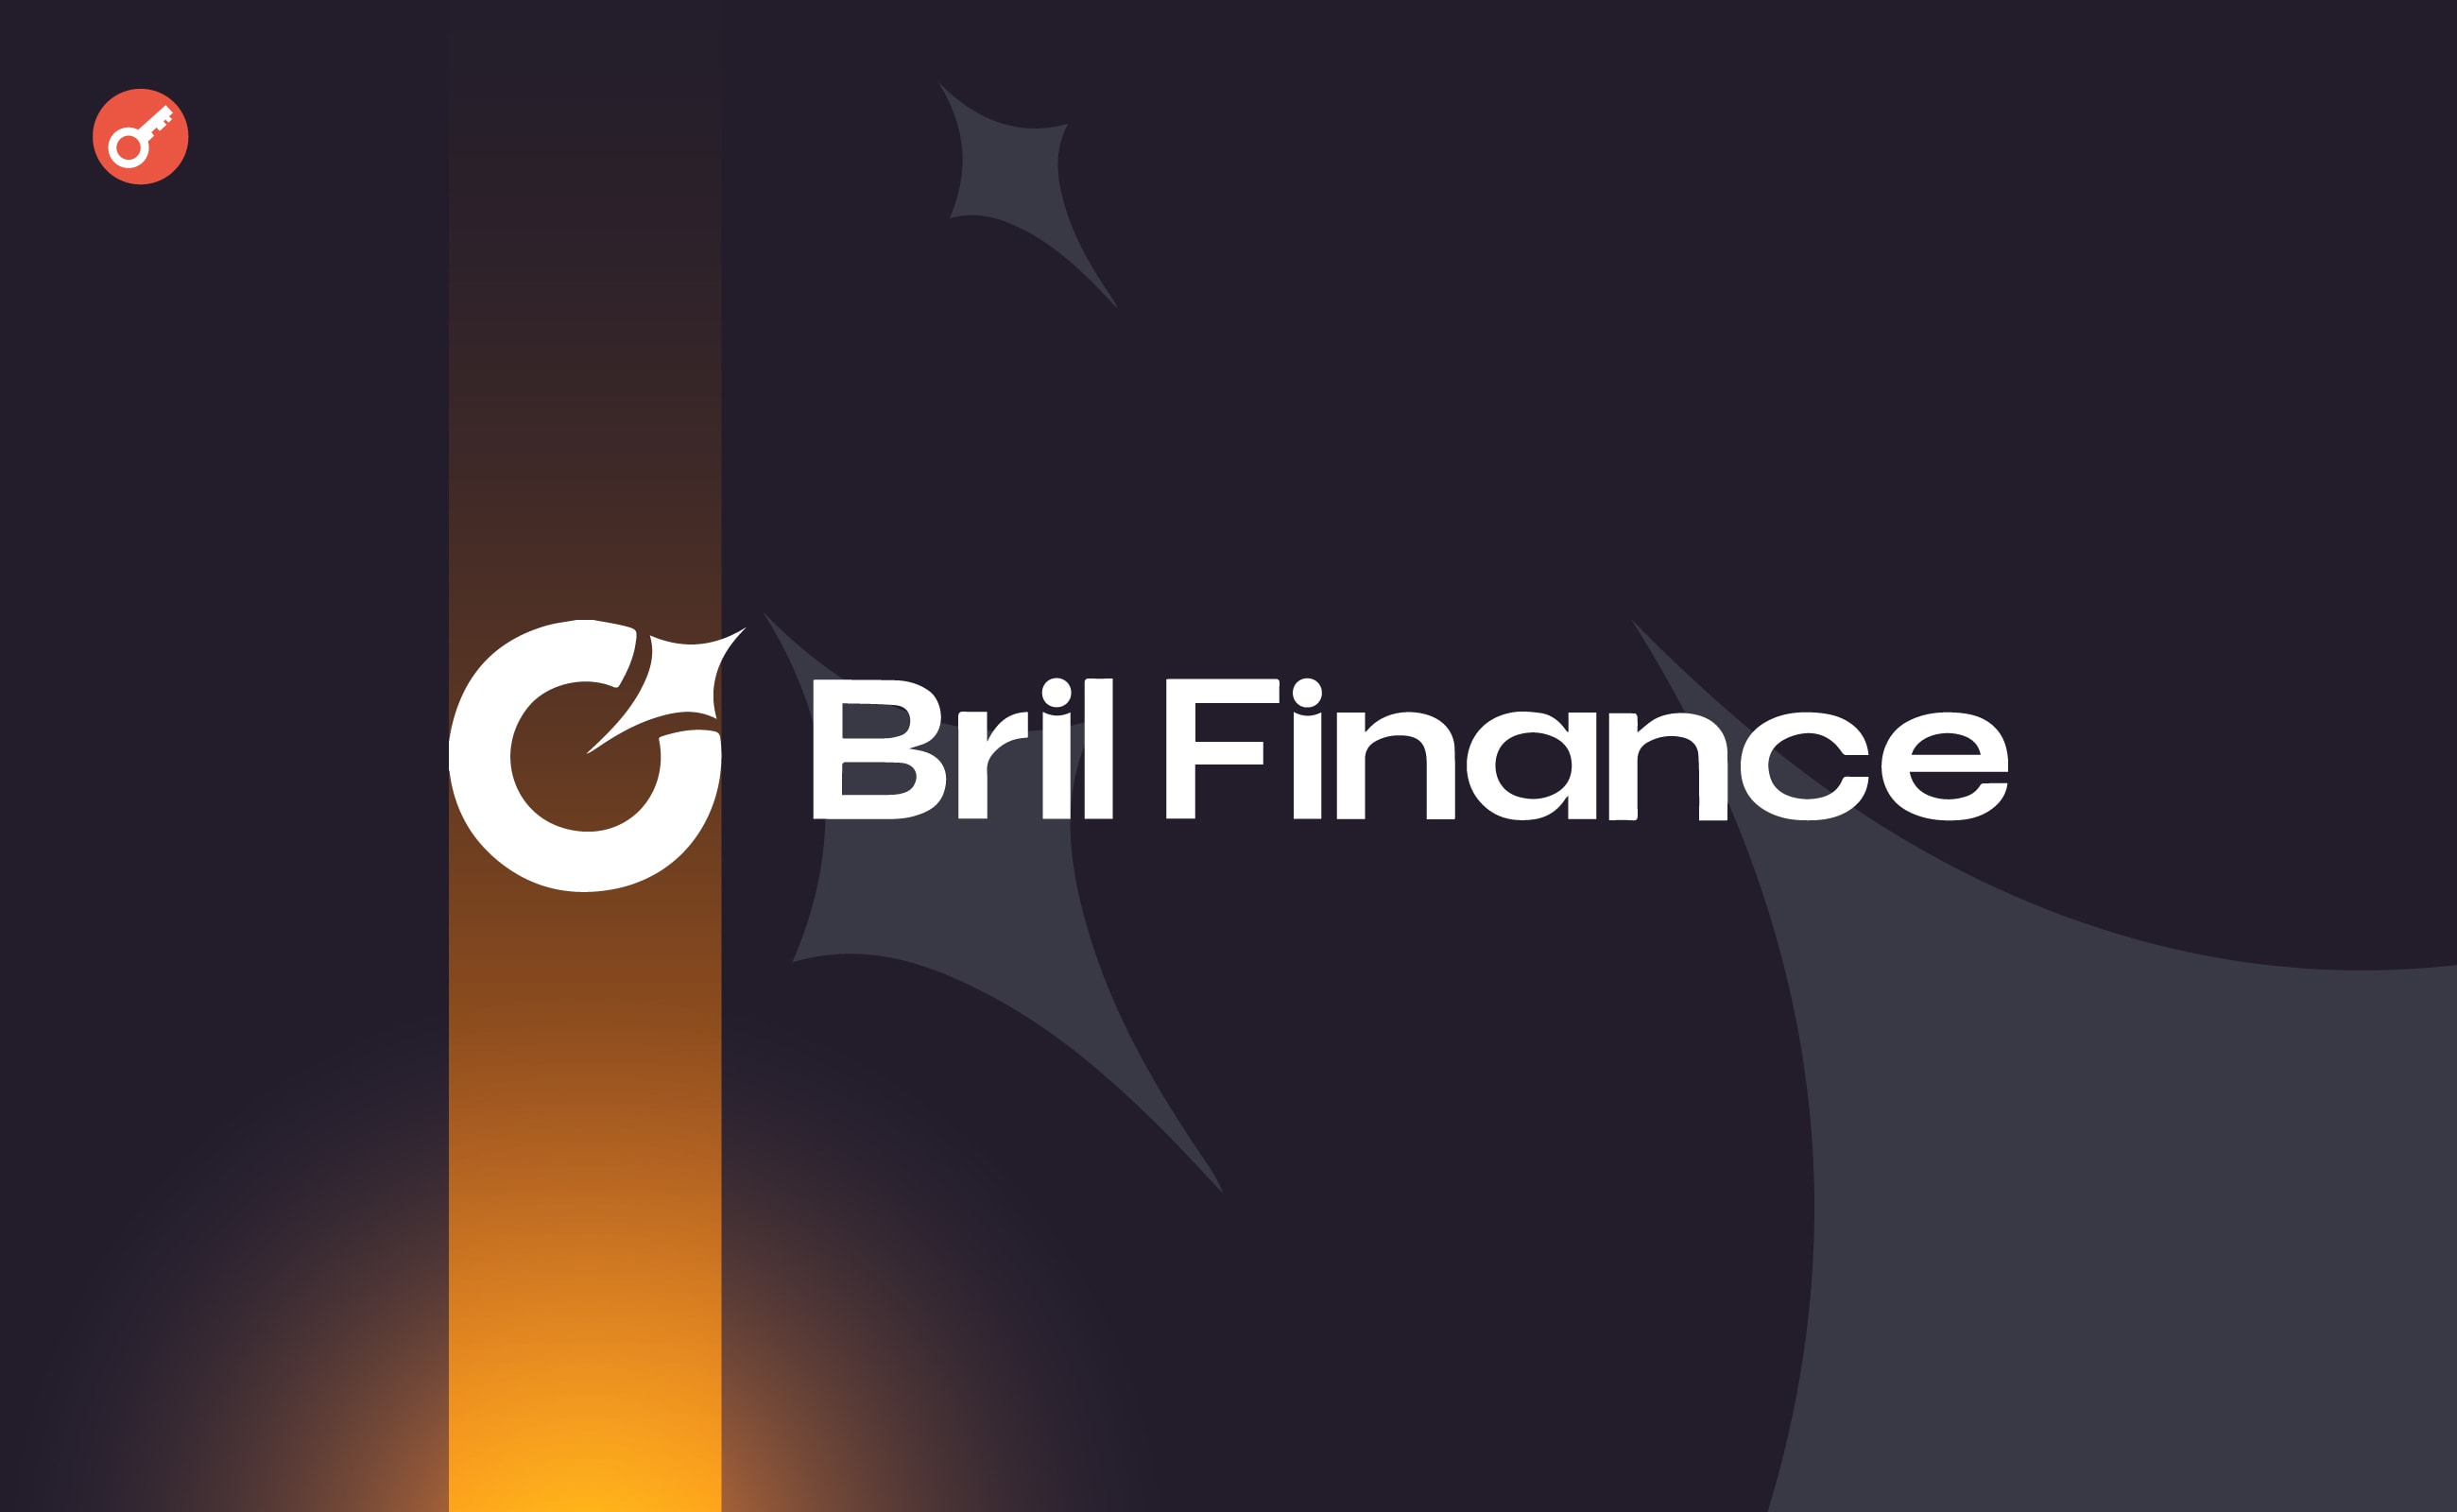 Bril Finance залучила $3 млн інвестицій. Головний колаж новини.